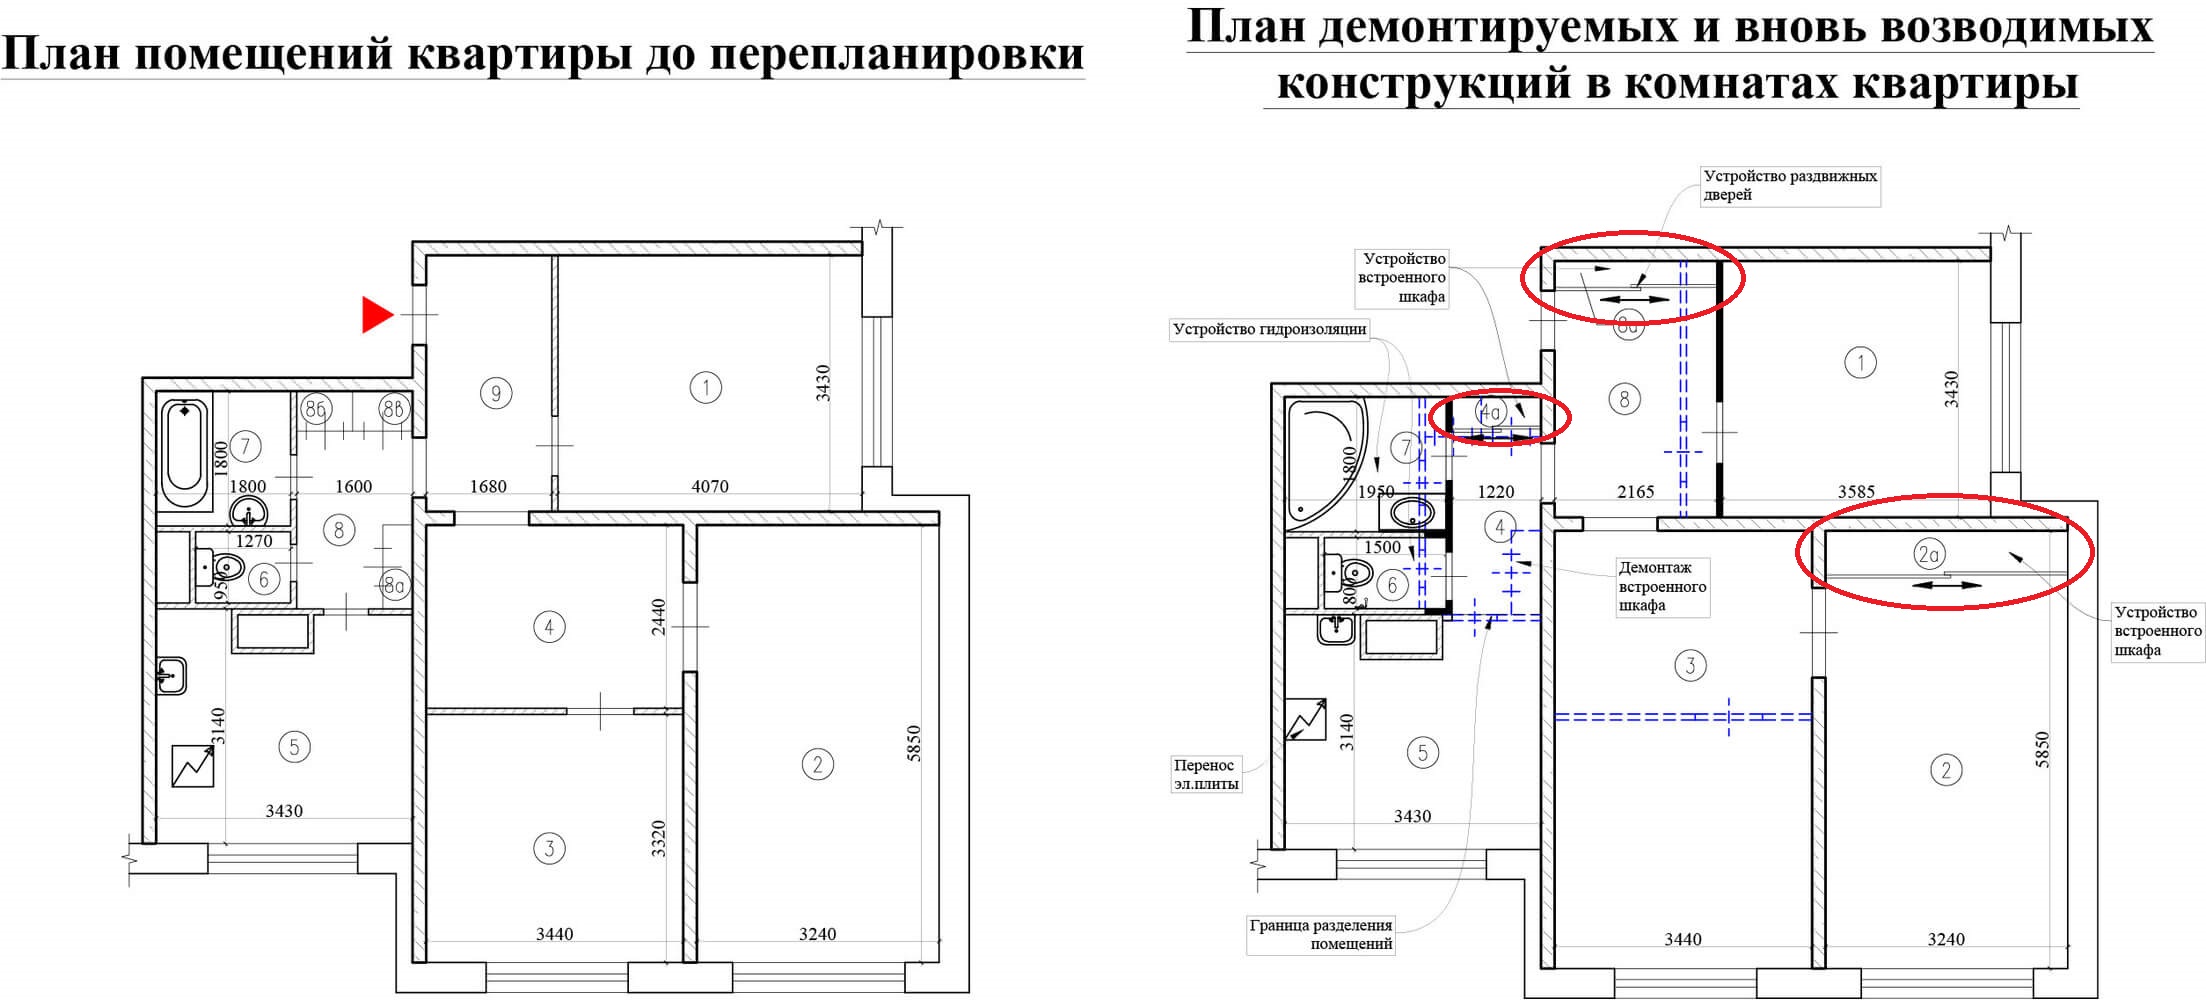 Справа – план квартиры до ремонта, слева – перечисление всех проводимых работ. 